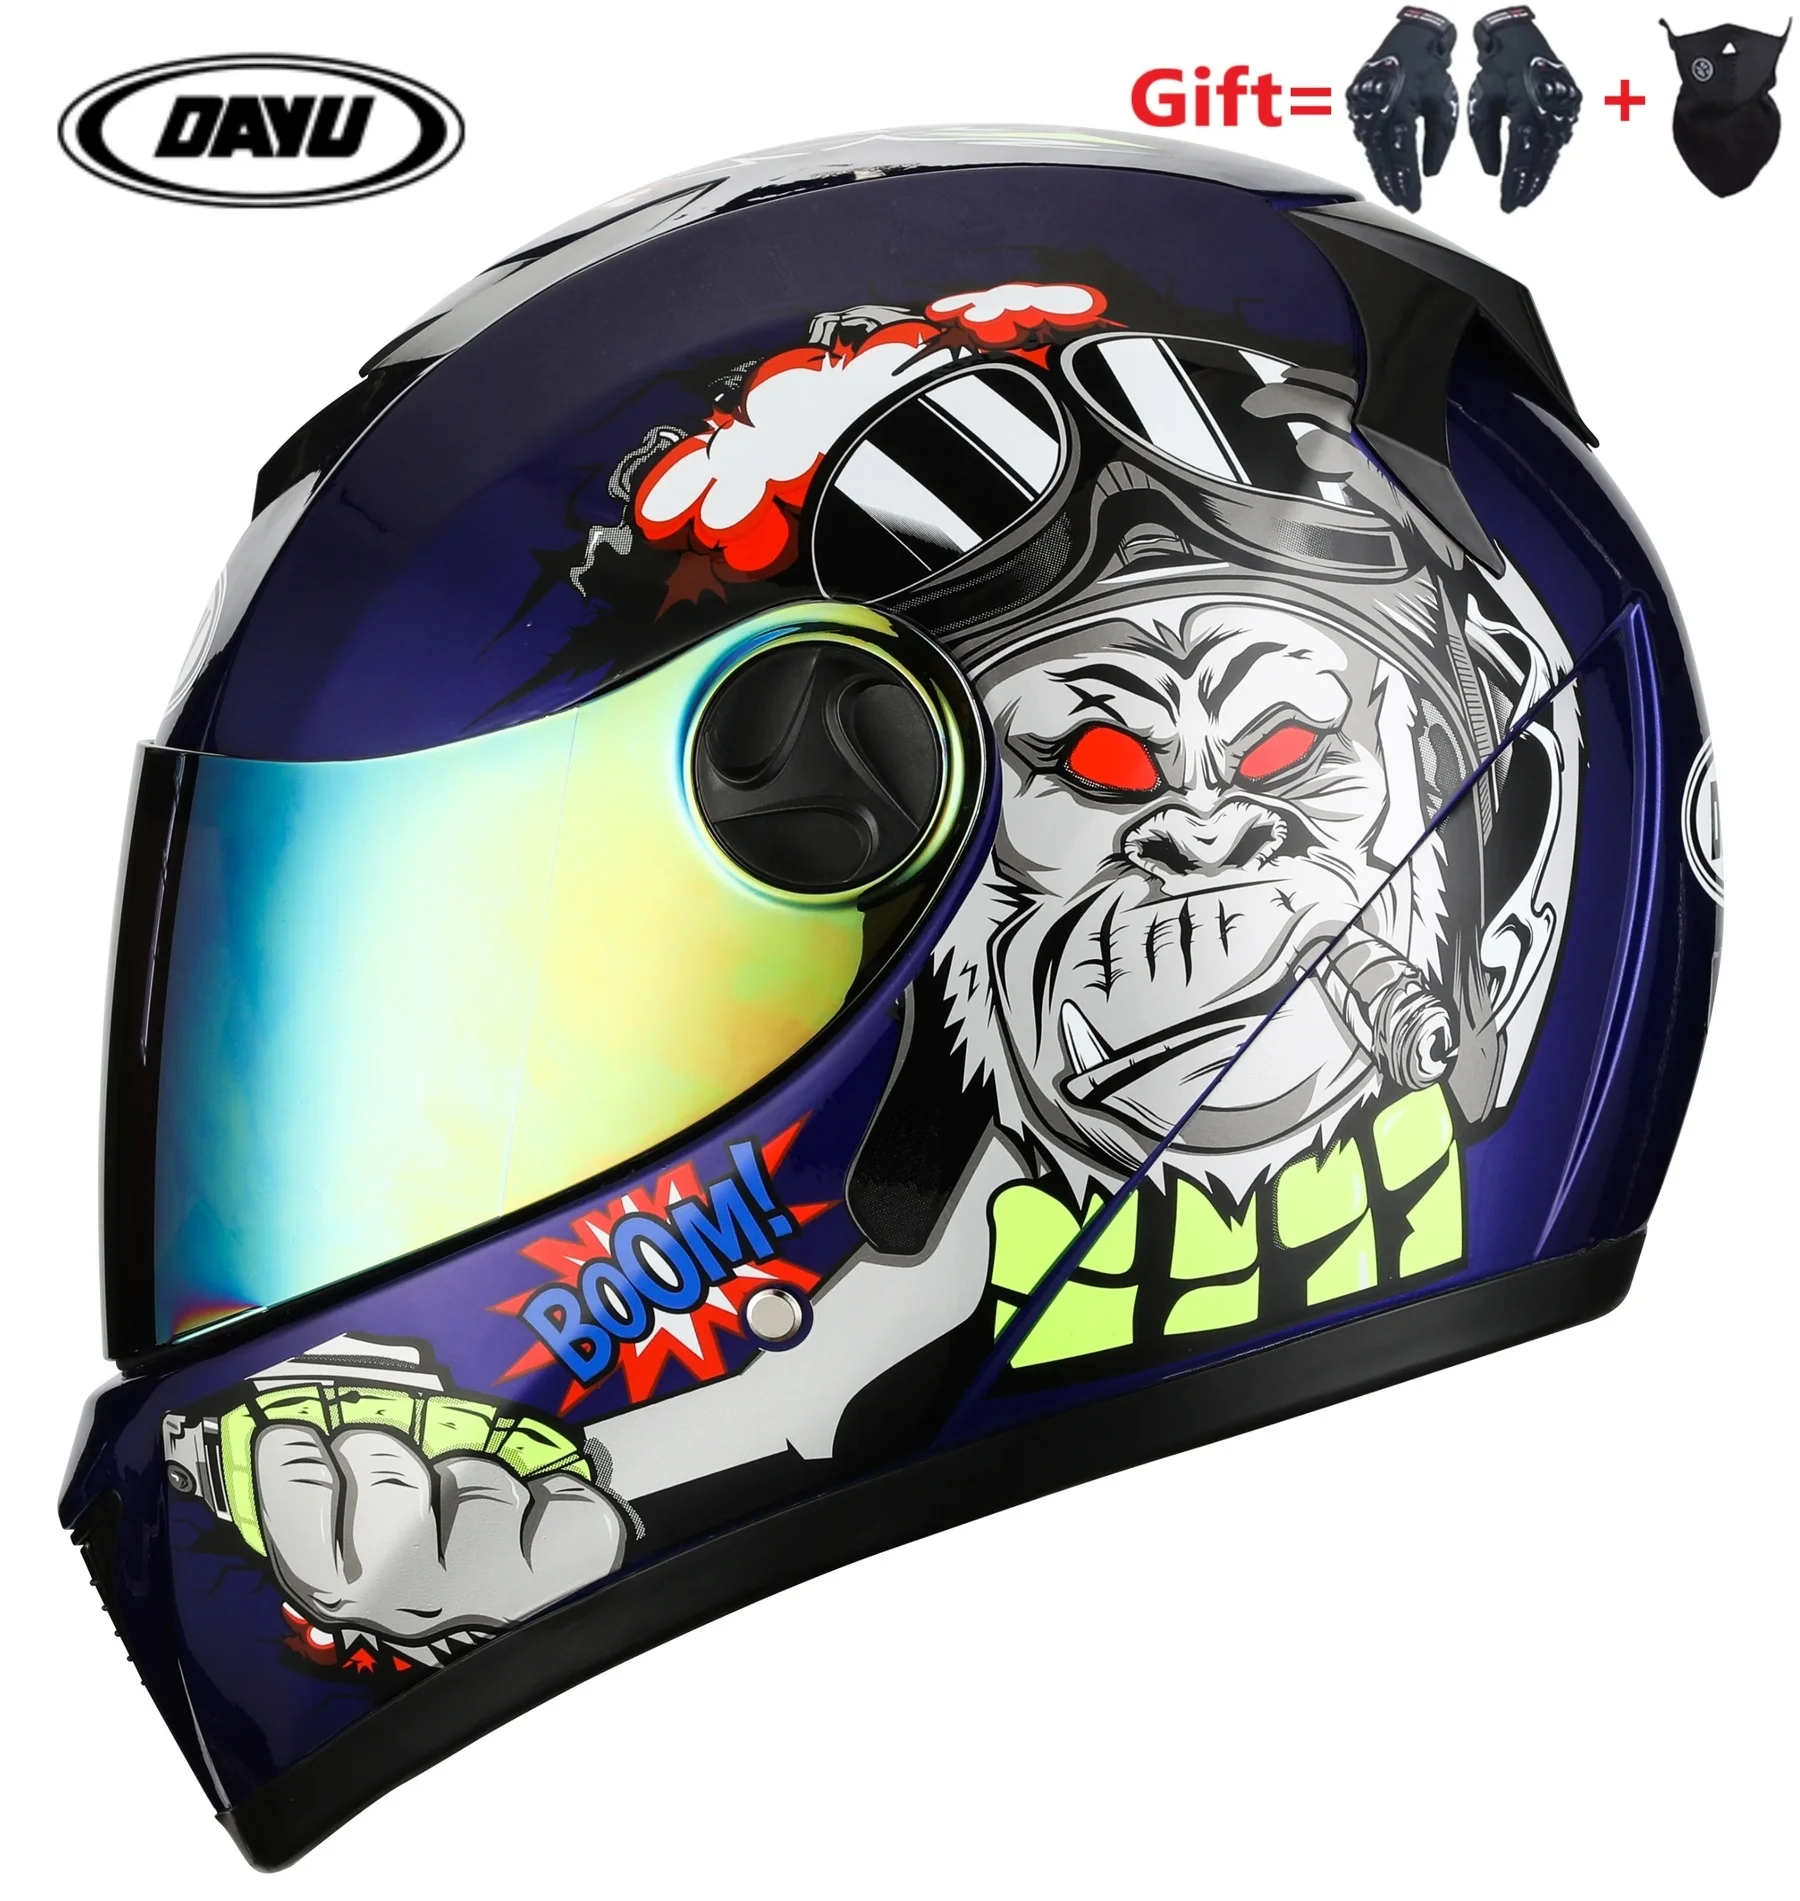 

Мотоциклетный шлем, профессиональный шлем на все лицо, с двойными стеклами, для мужчин и женщин, 2 подарка